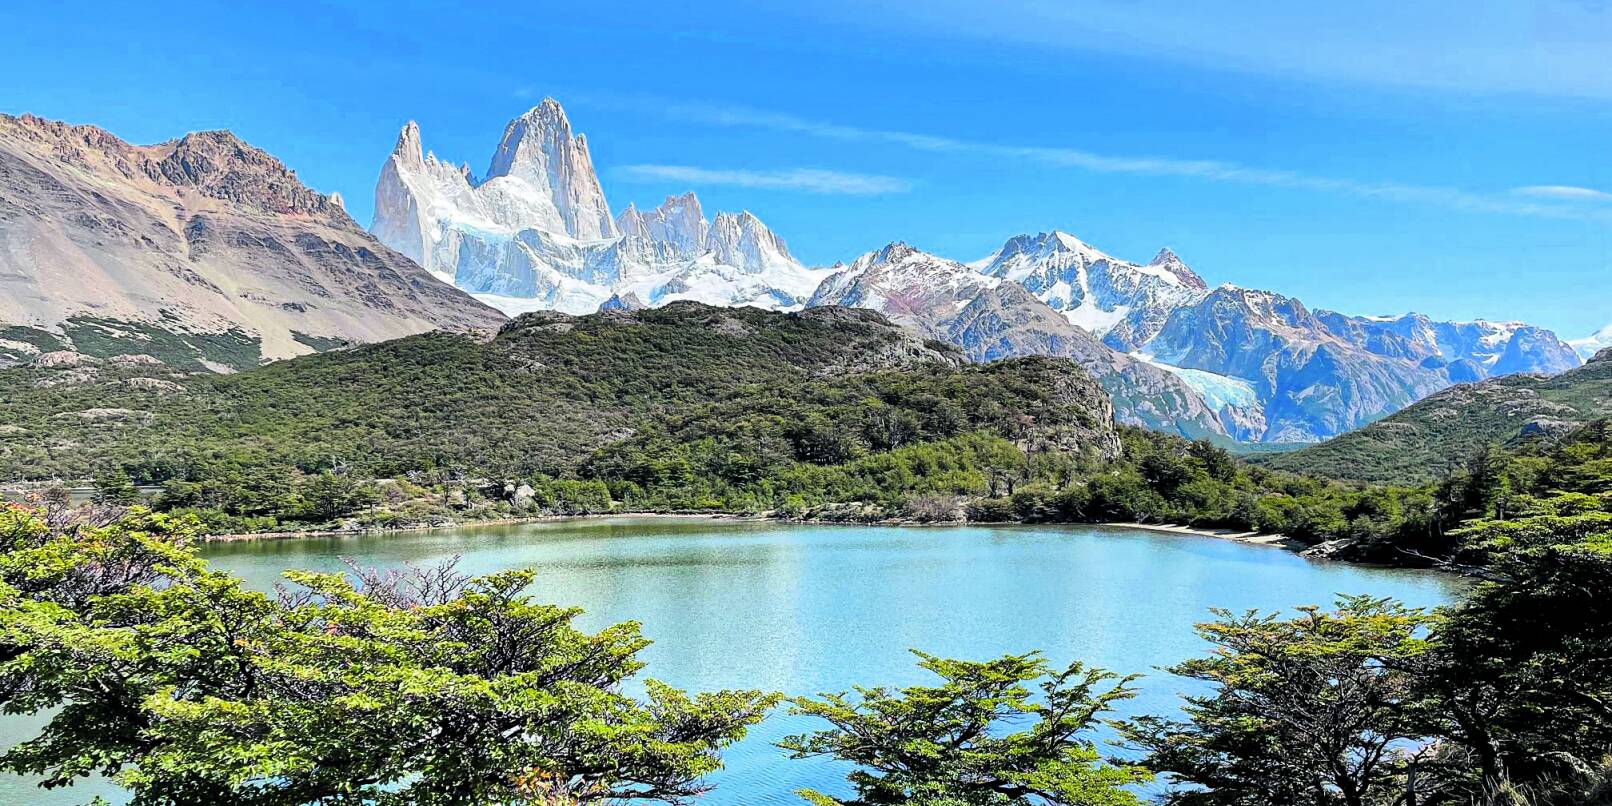 Majestätisch liegt er da, der Fitz Roy: Kein Wunder, dass die Outdoor-Marke Patagonia die Silhouette des Massivs als ihr Markenzeichen gewählt hat.